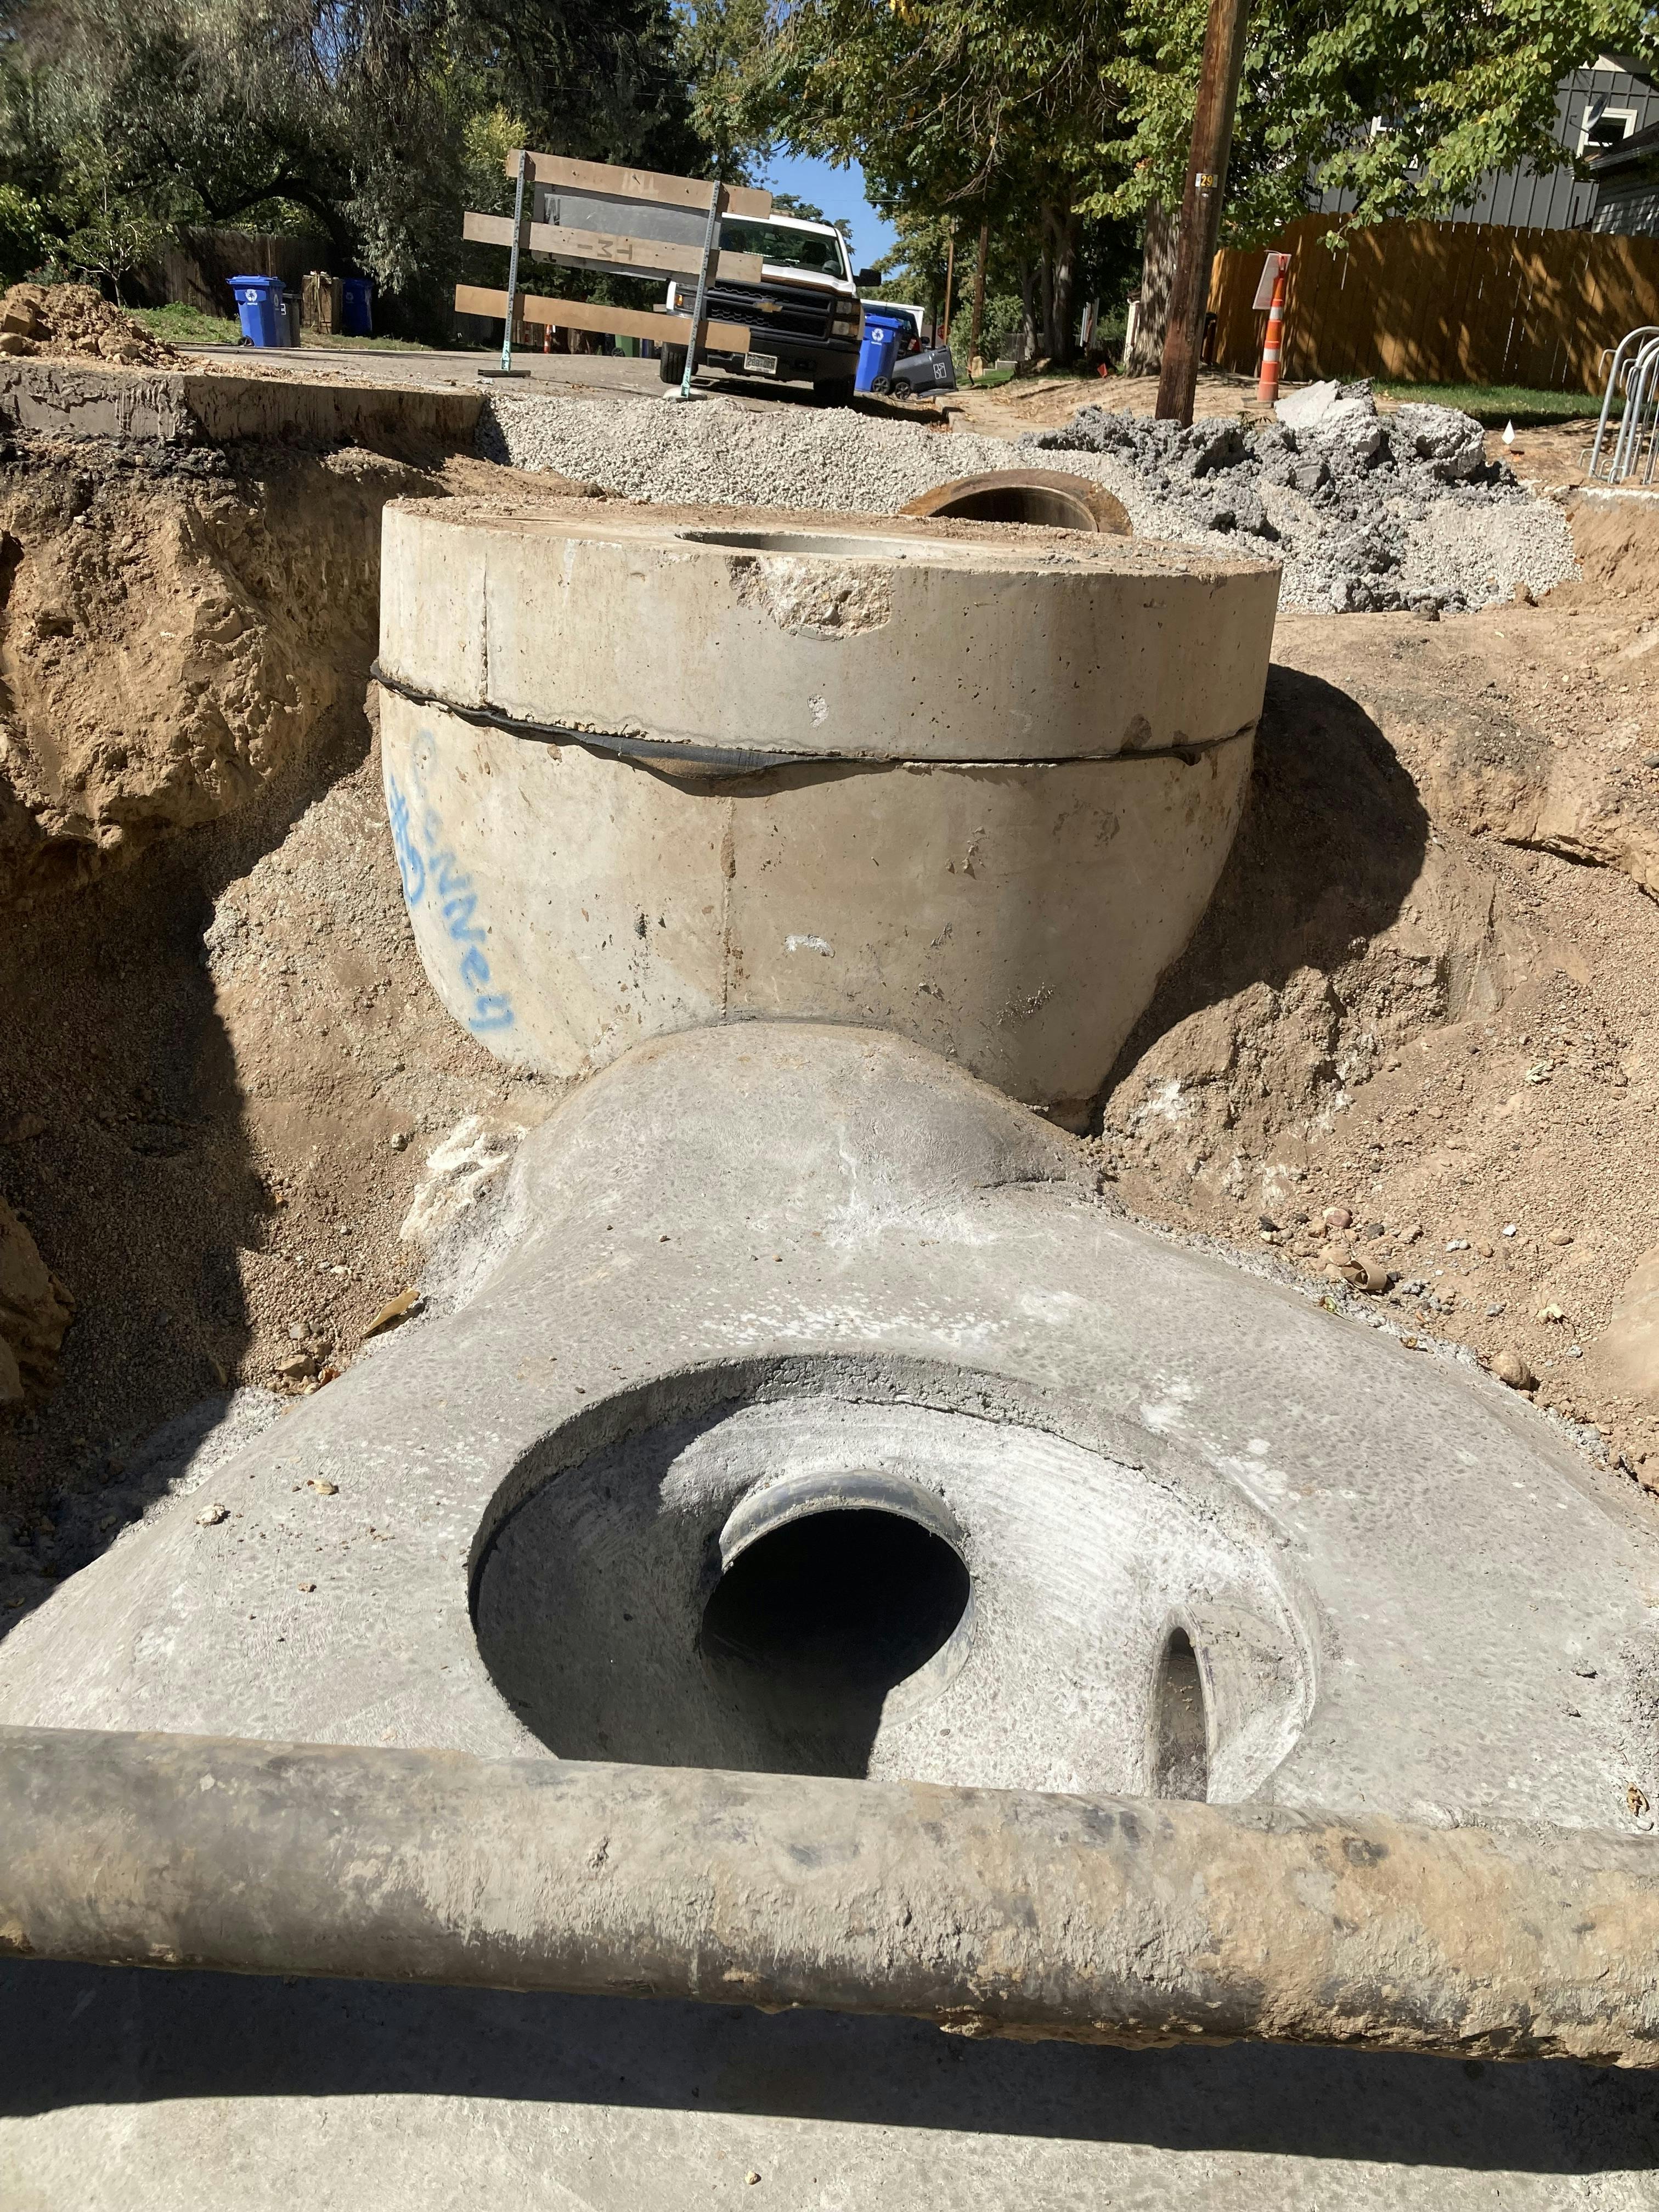 September 2022 - Manhole installed